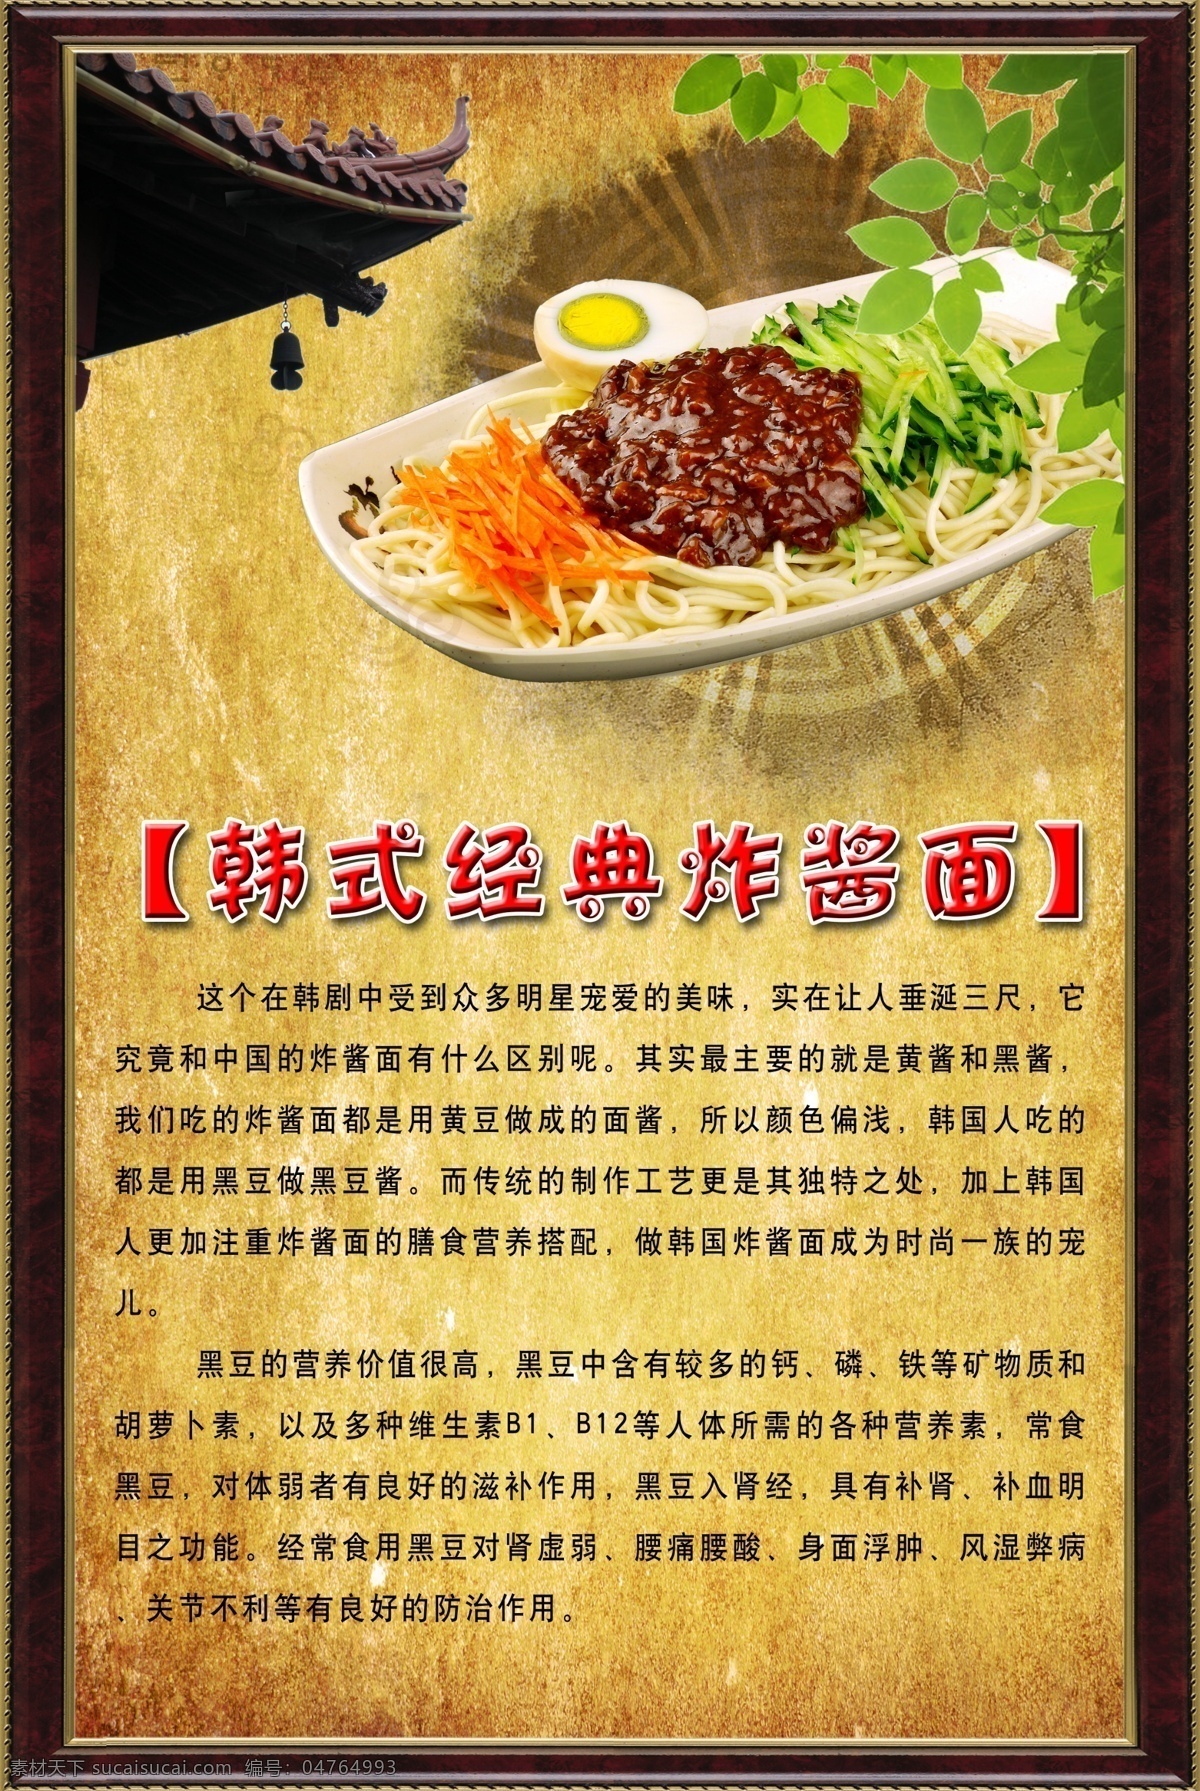 海报 写真 韩式炸酱面 炸酱面 餐饮 宣传海报